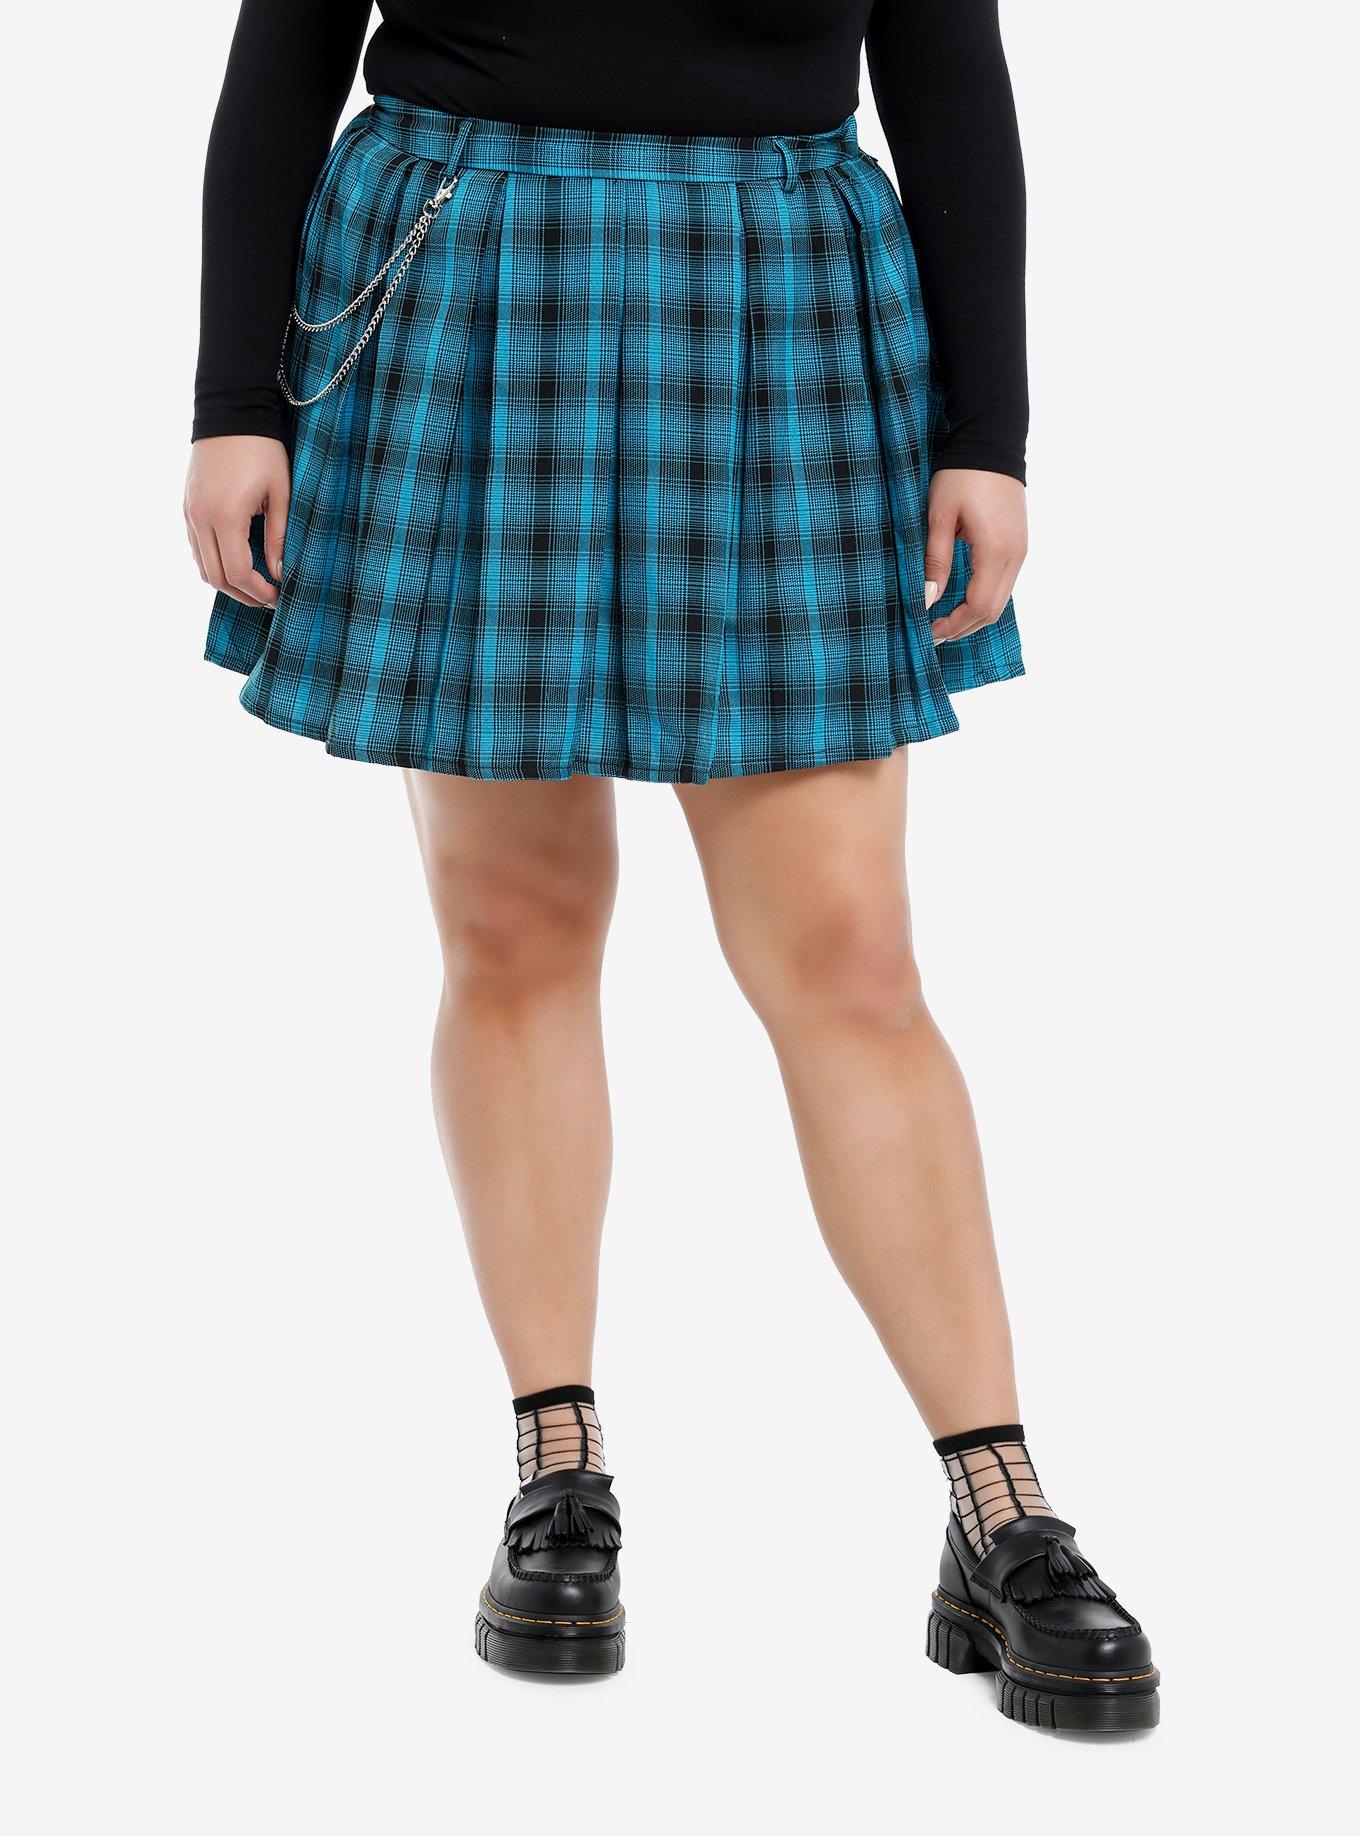 Teal & Black Plaid Pleated Skirt Plus